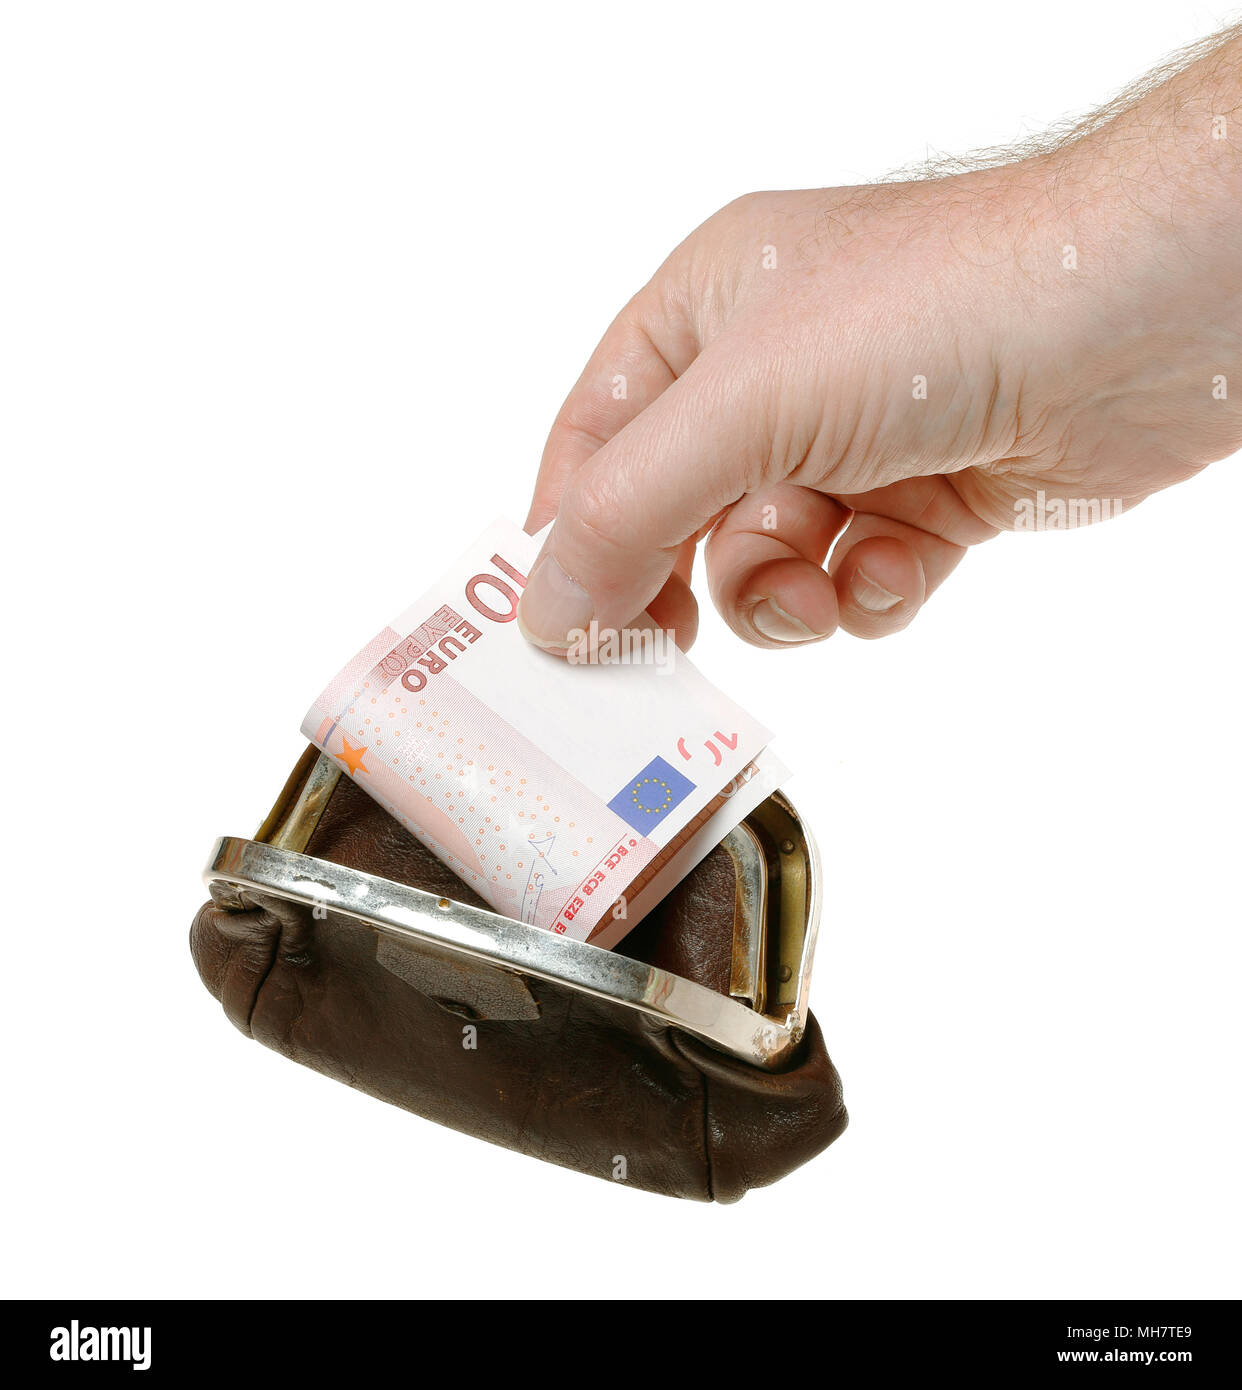 La mano di una persona in possesso di una decina di banconota in euro in un portamonete marrone, isolato su sfondo bianco. Foto Stock